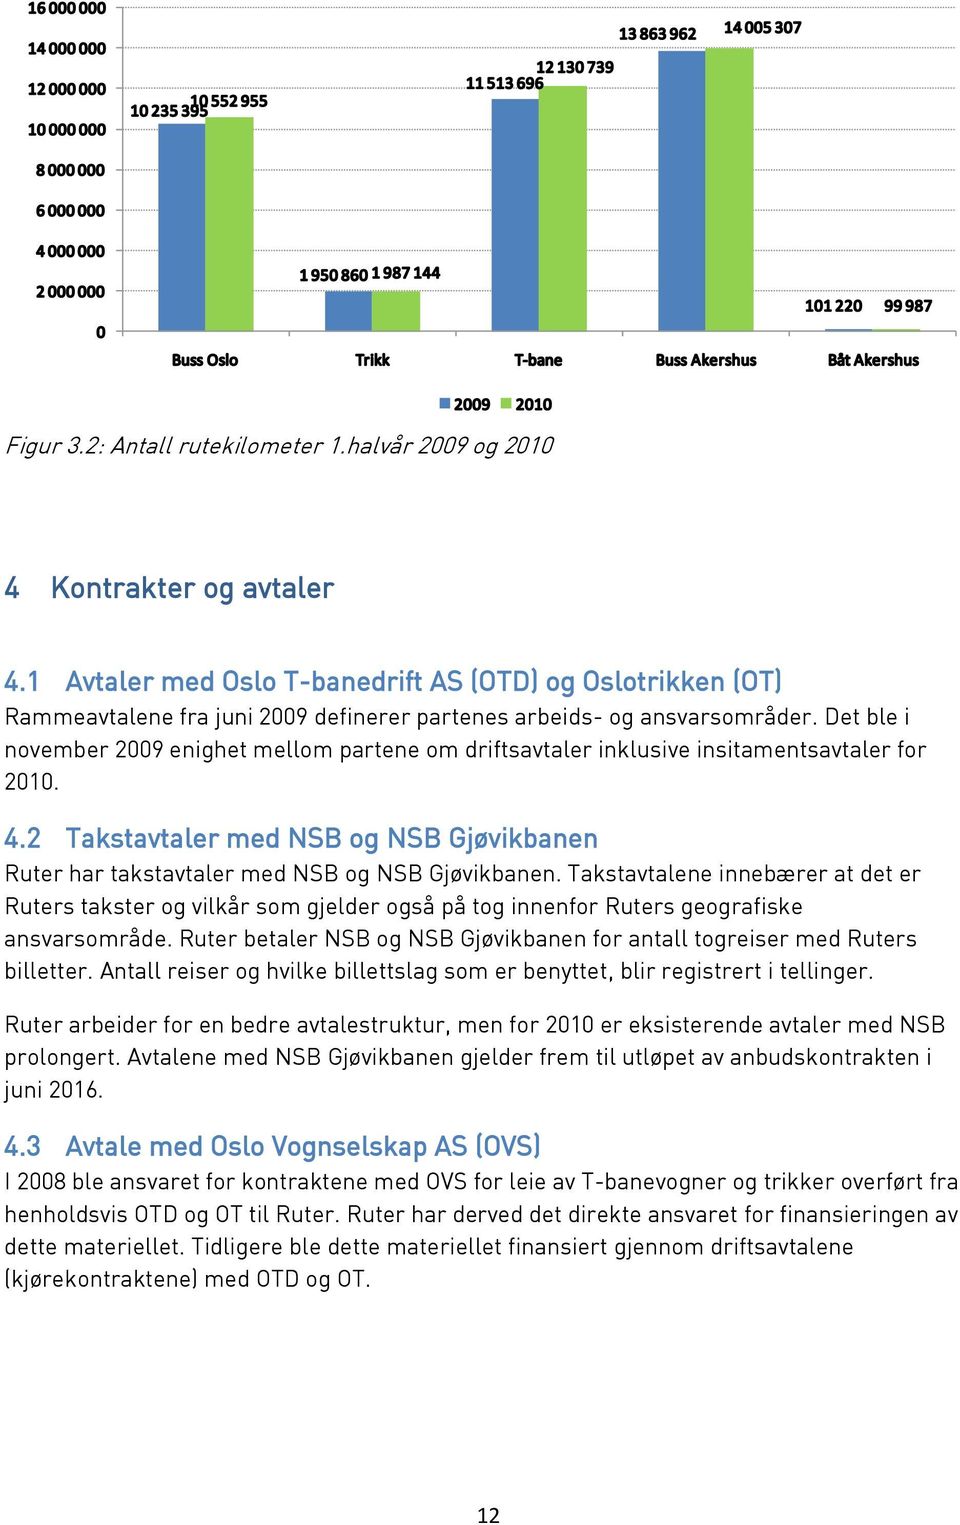 1 Avtaler med Oslo T-banedrift AS (OTD) og Oslotrikken (OT) Rammeavtalene fra juni 2009 definerer partenes arbeids- og ansvarsområder.